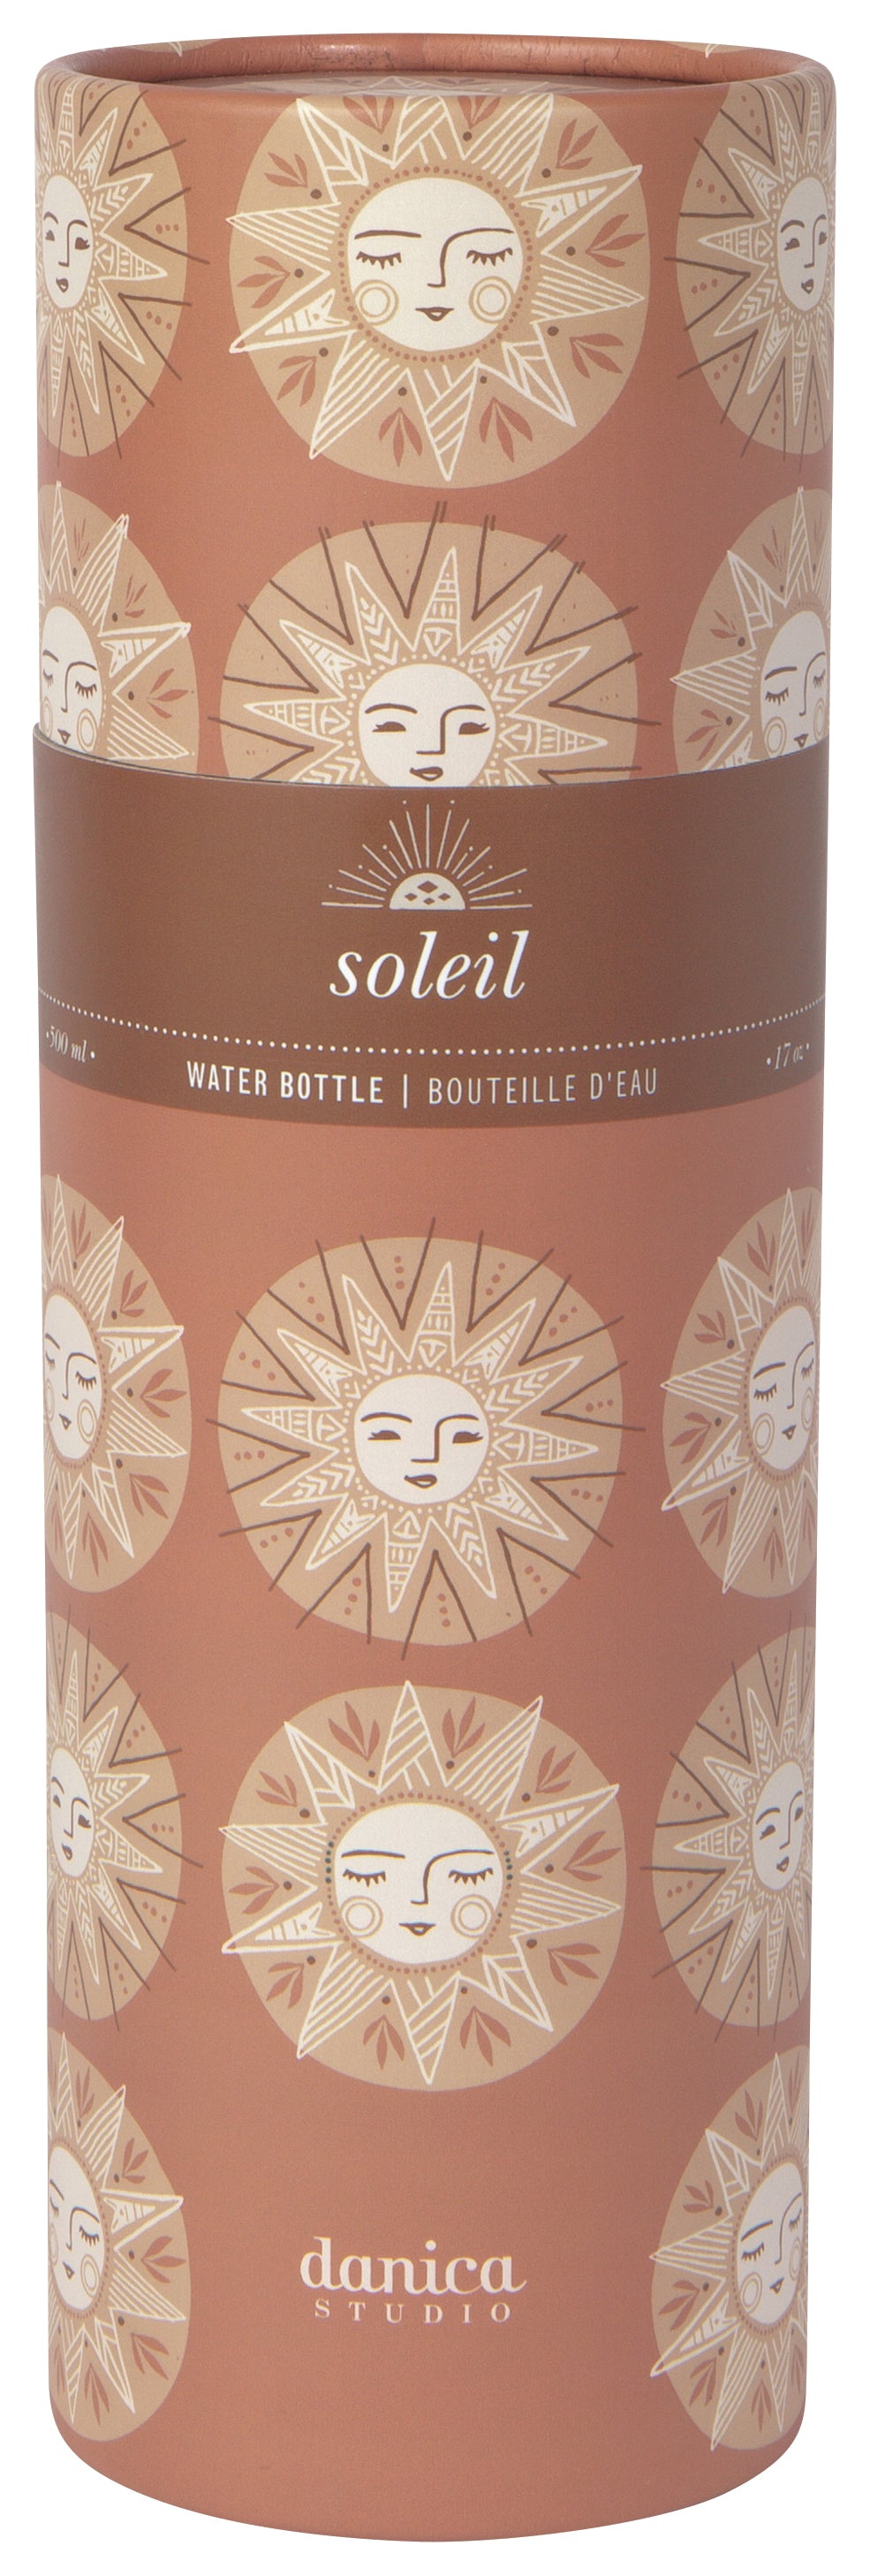 Soleil - Water Bottle